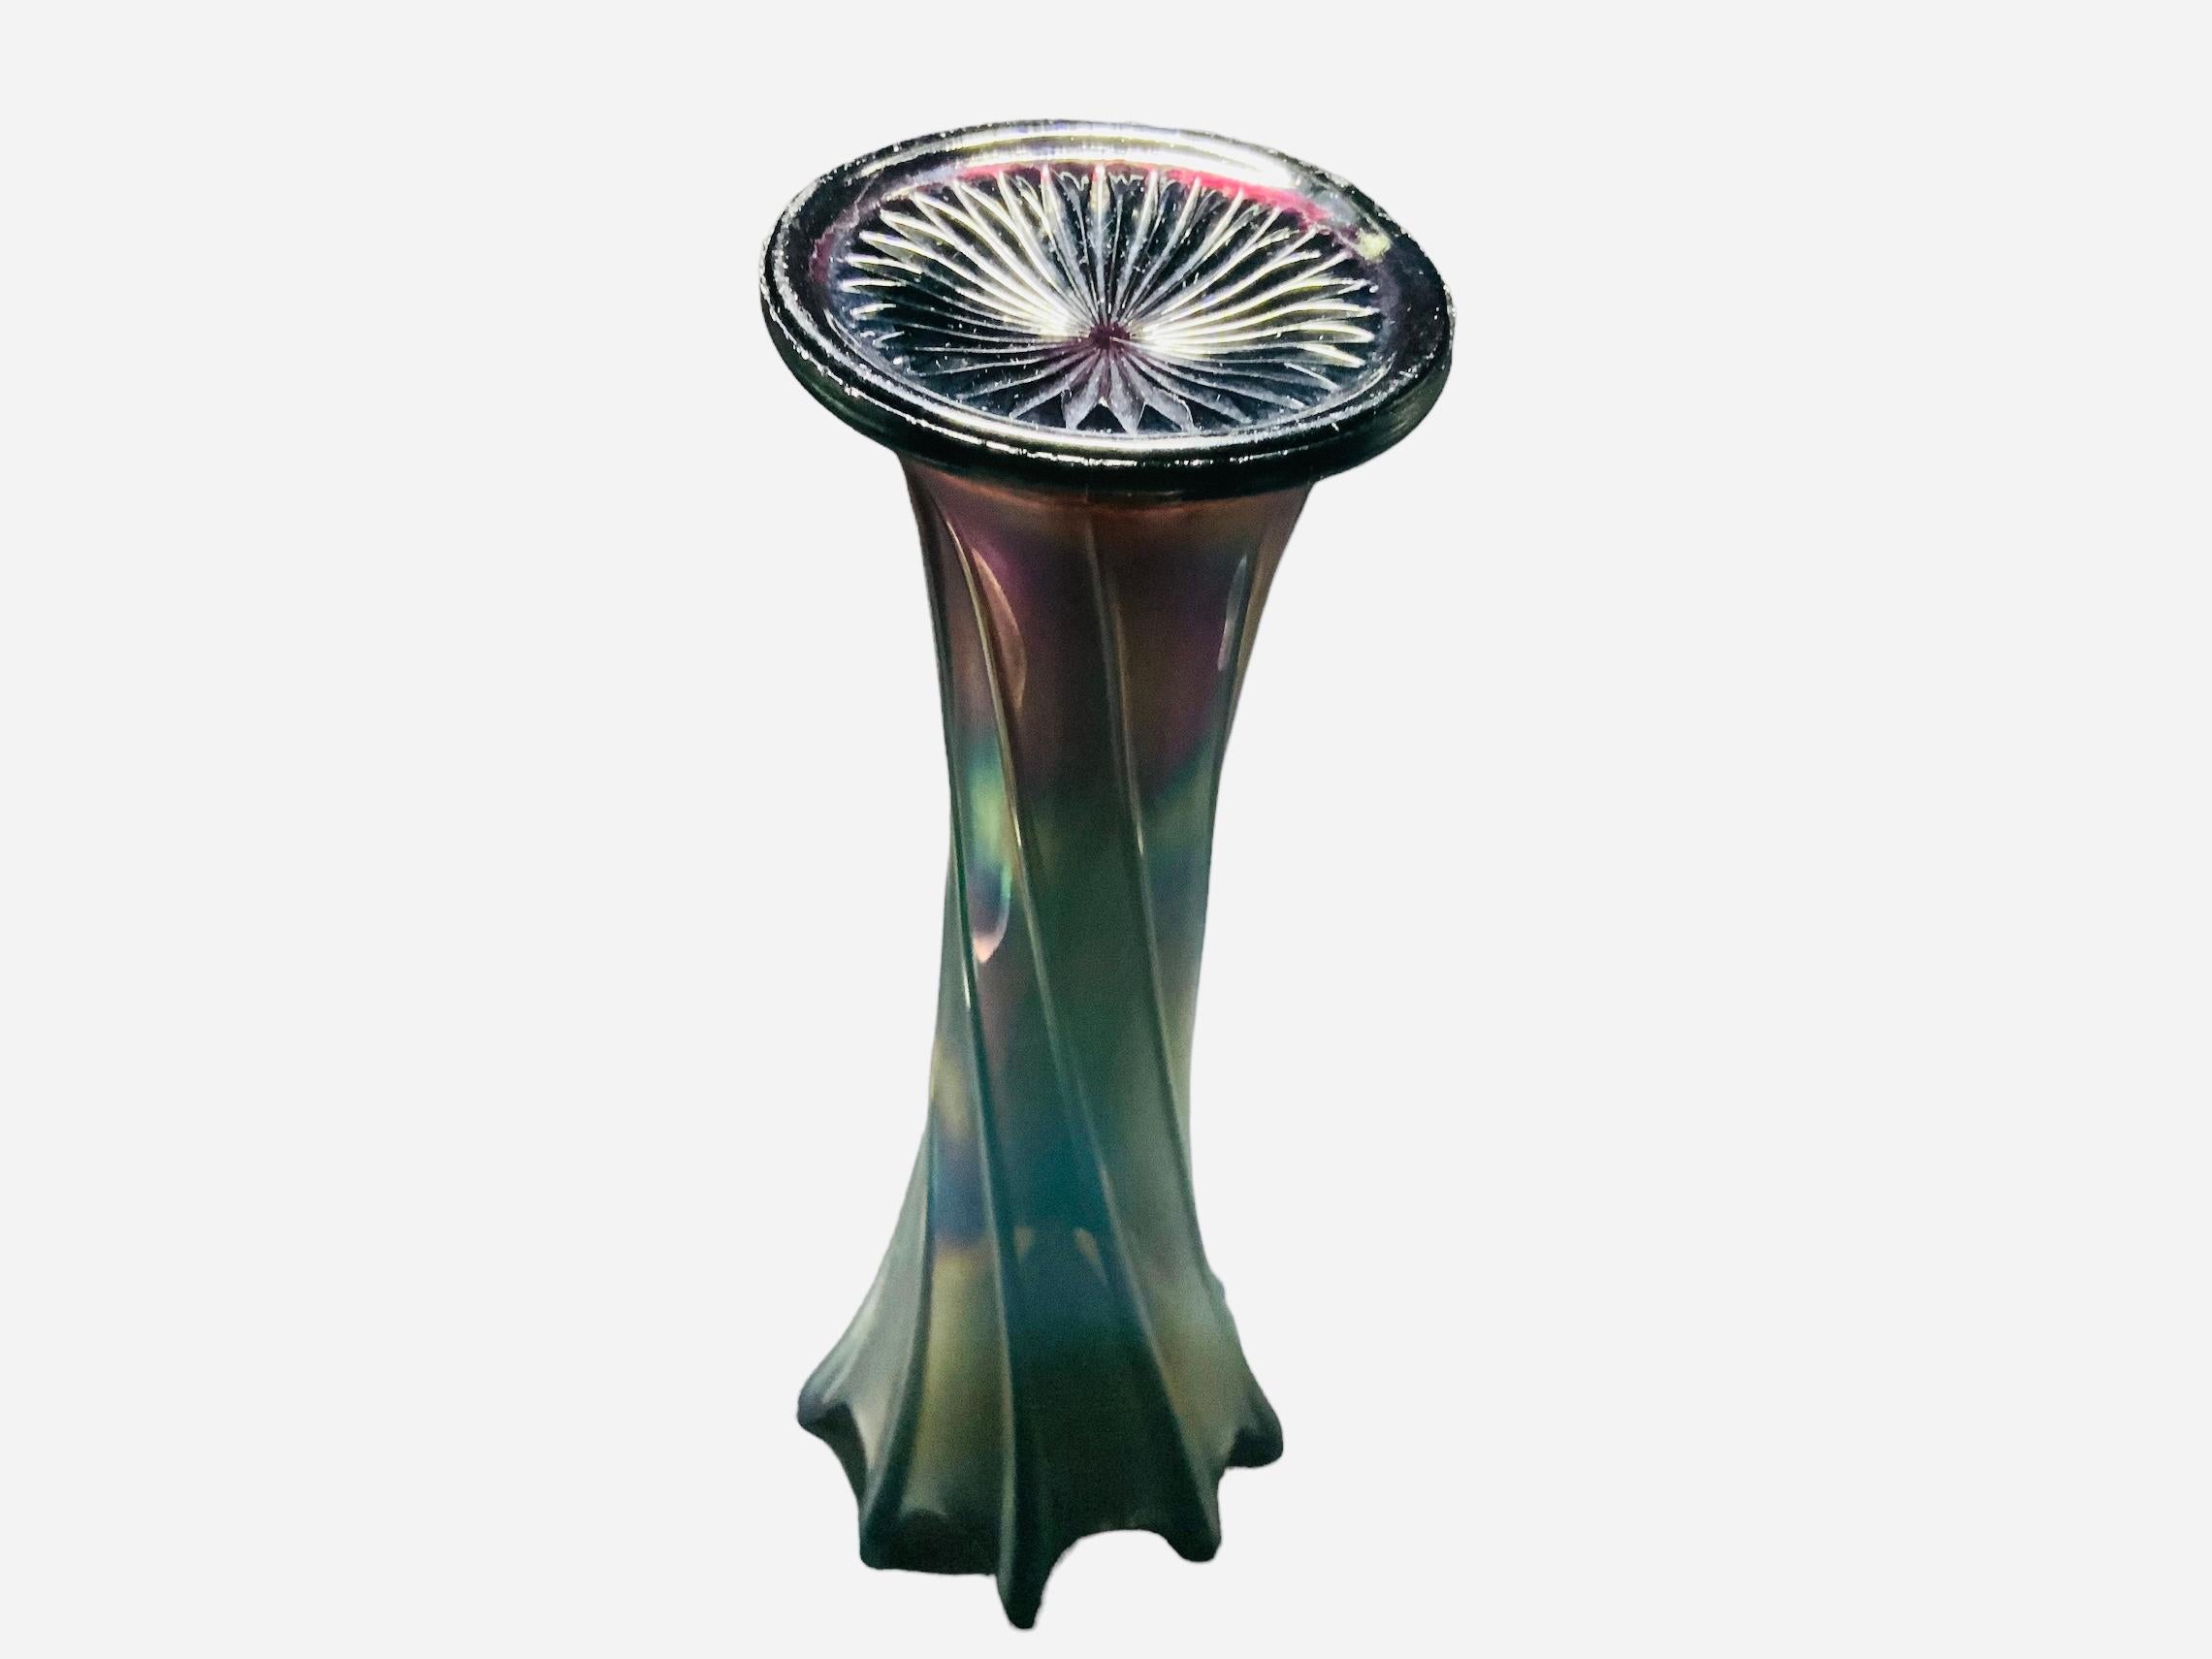 Dies ist eine große schillernde Glasblumenvase. Es zeigt eine mehrfarbige Glasblumenvase mit hohem gewelltem oberen Rand. Die gesamte Vase ist mit geriffelten Bändern verziert, die zu den Spitzen der Wellen passen.